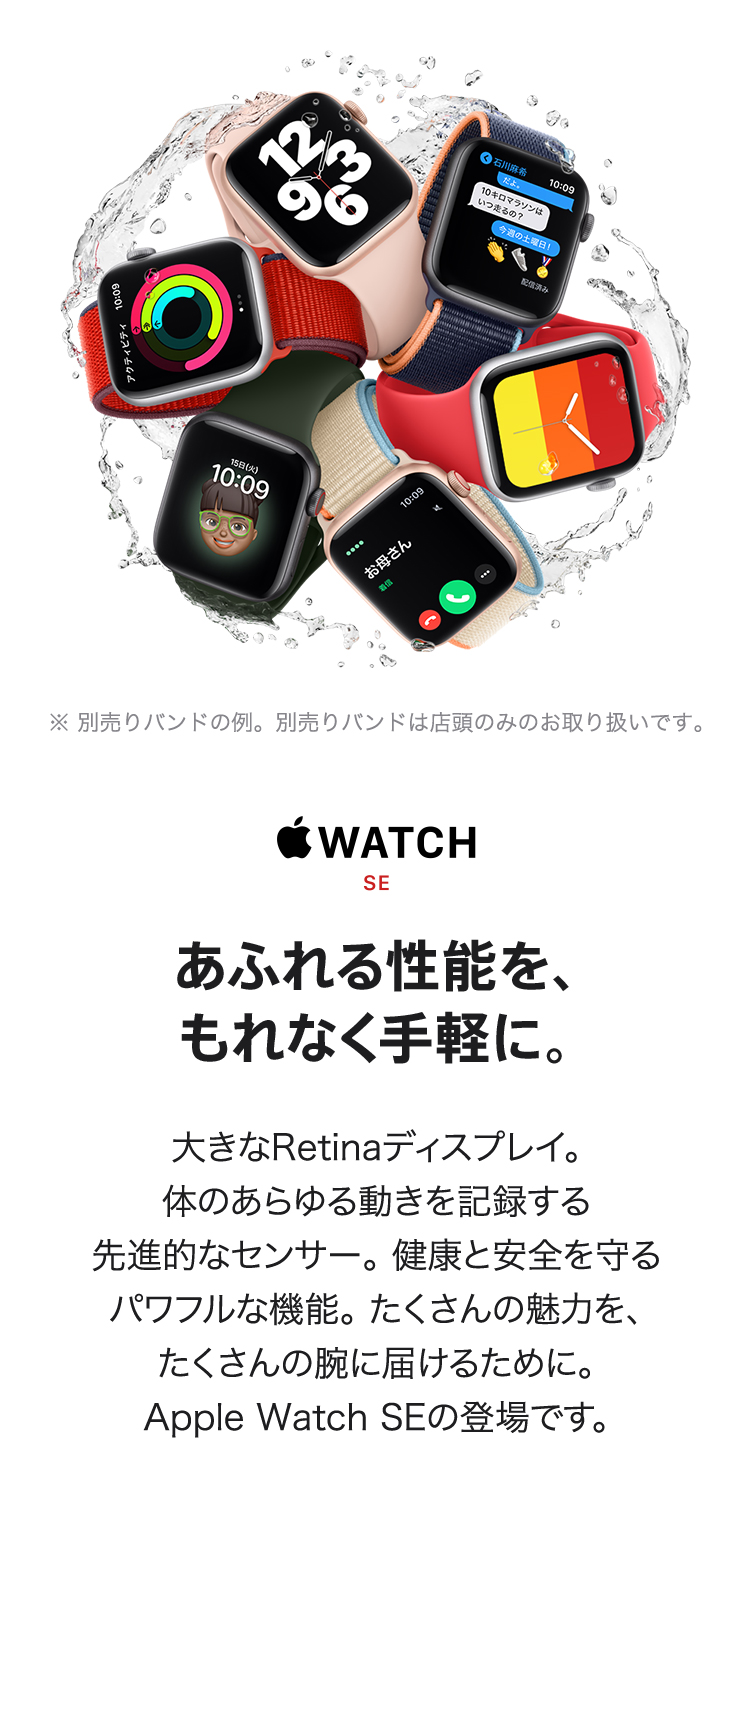 Apple Watch Series Se 製品情報 スマートフォン 携帯電話 ソフトバンク